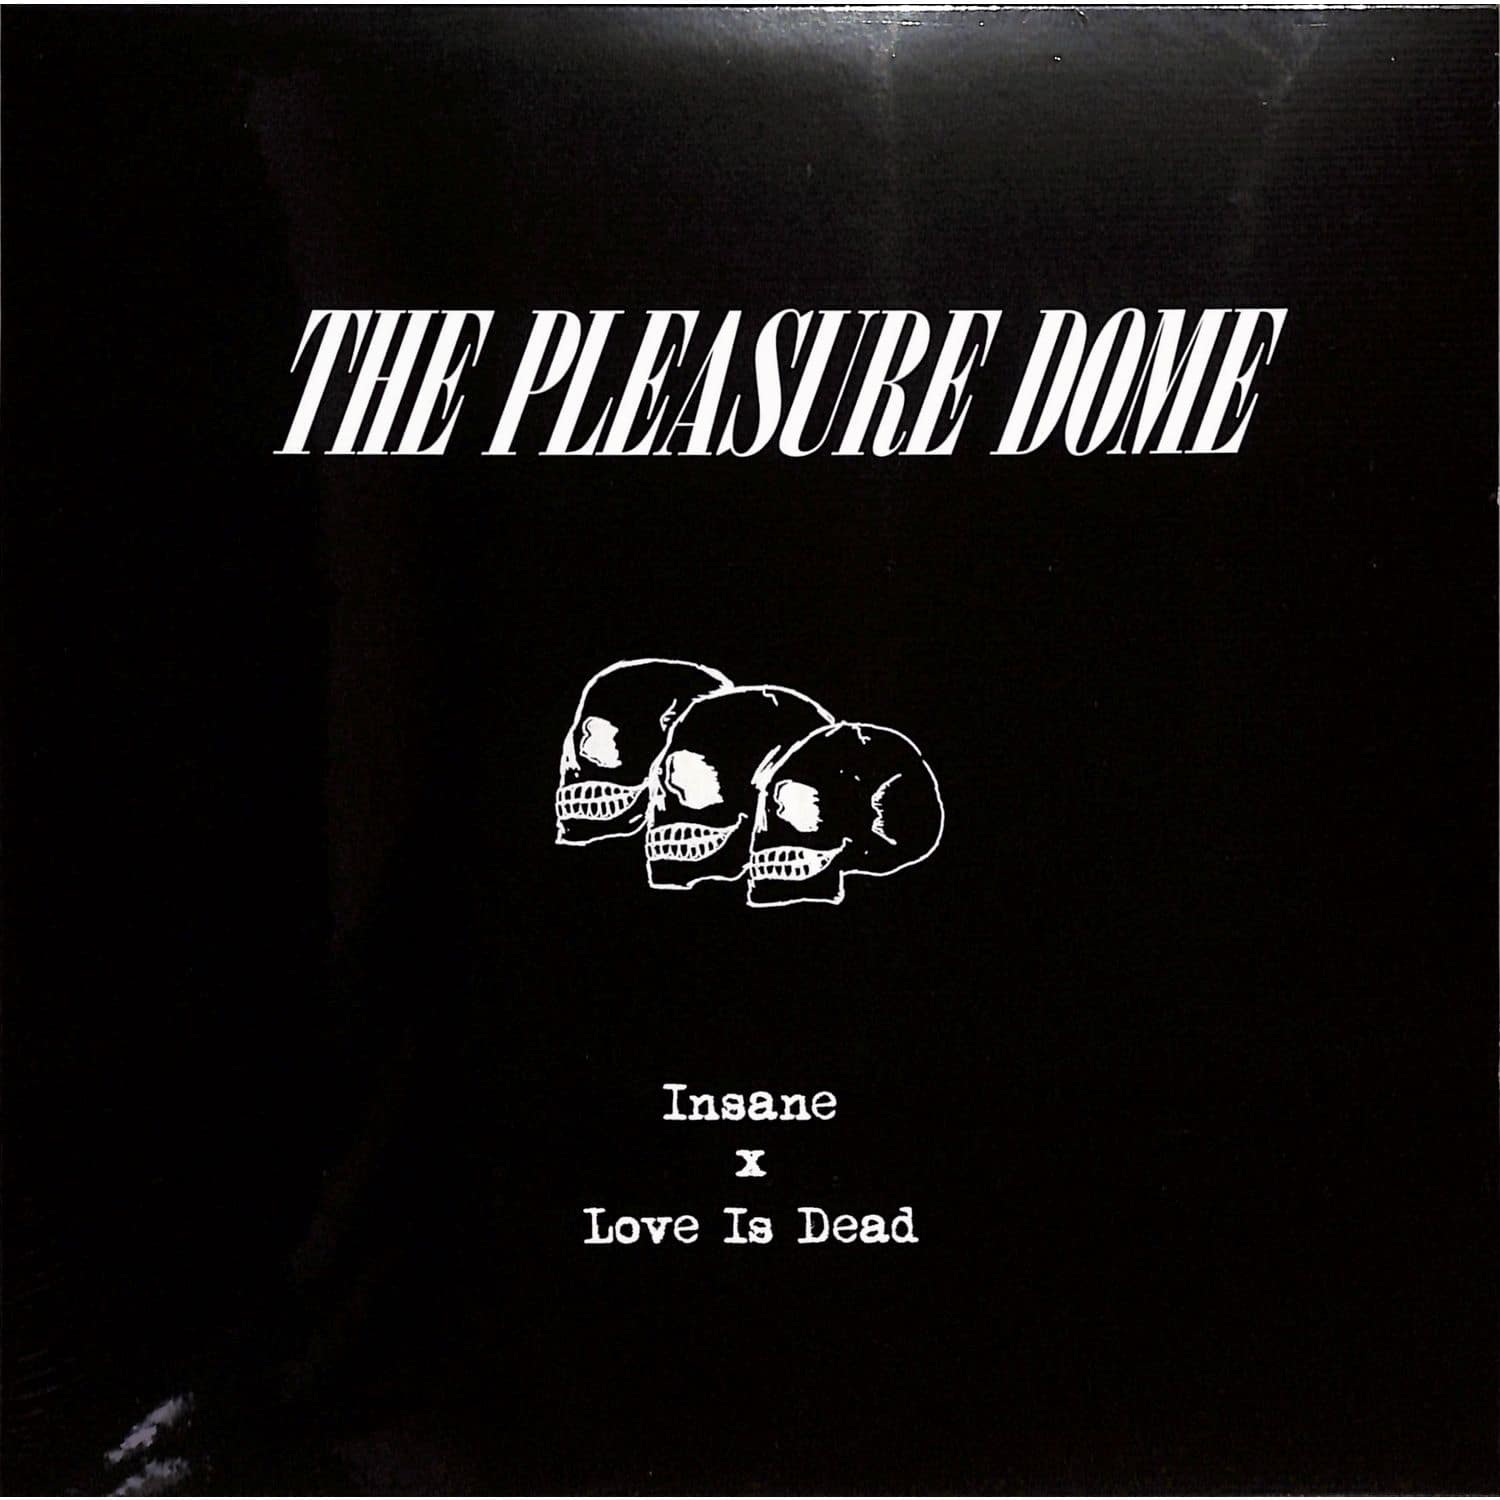 The Pleasure Dome - INSANE / LOVE IS DEAD 